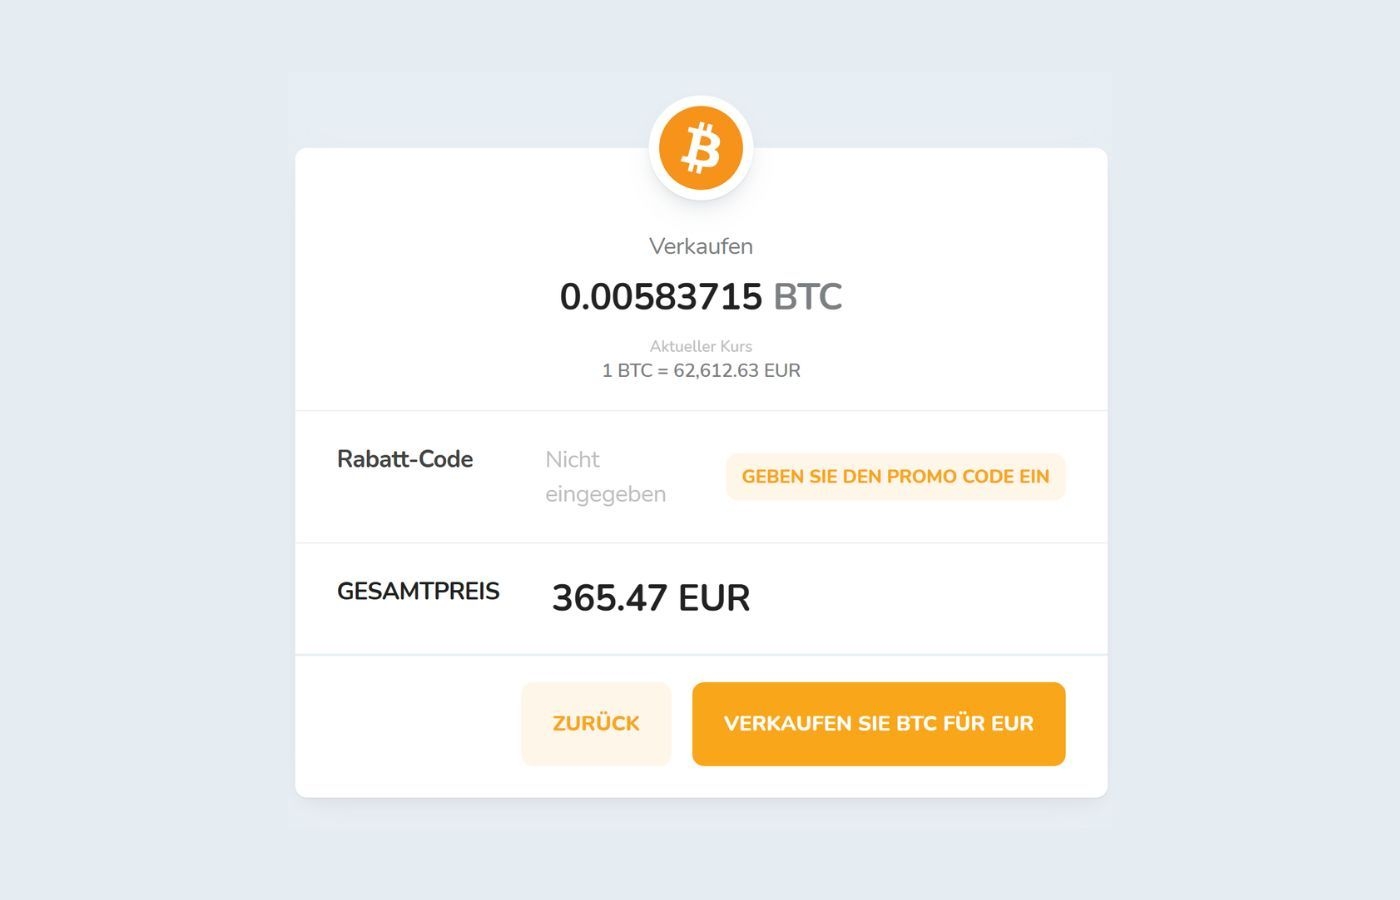 Bestätigung des Verkaufs von Kryptowährungen über das Bitcoin Store Wallet.